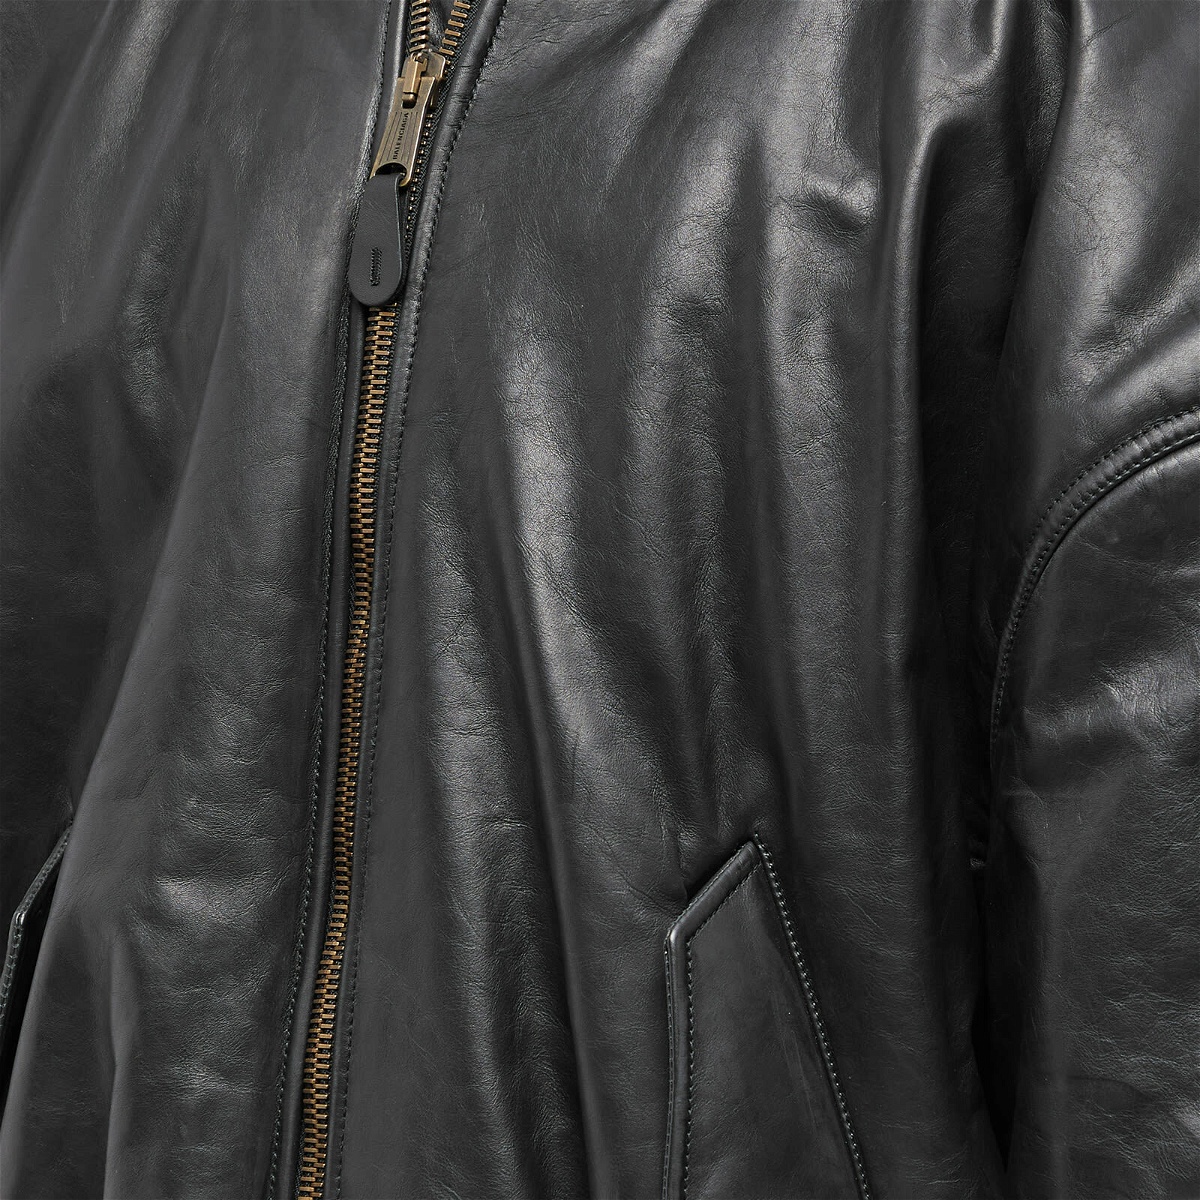 Balenciaga Men's Classic Leather Bomber Jacket in Black Balenciaga